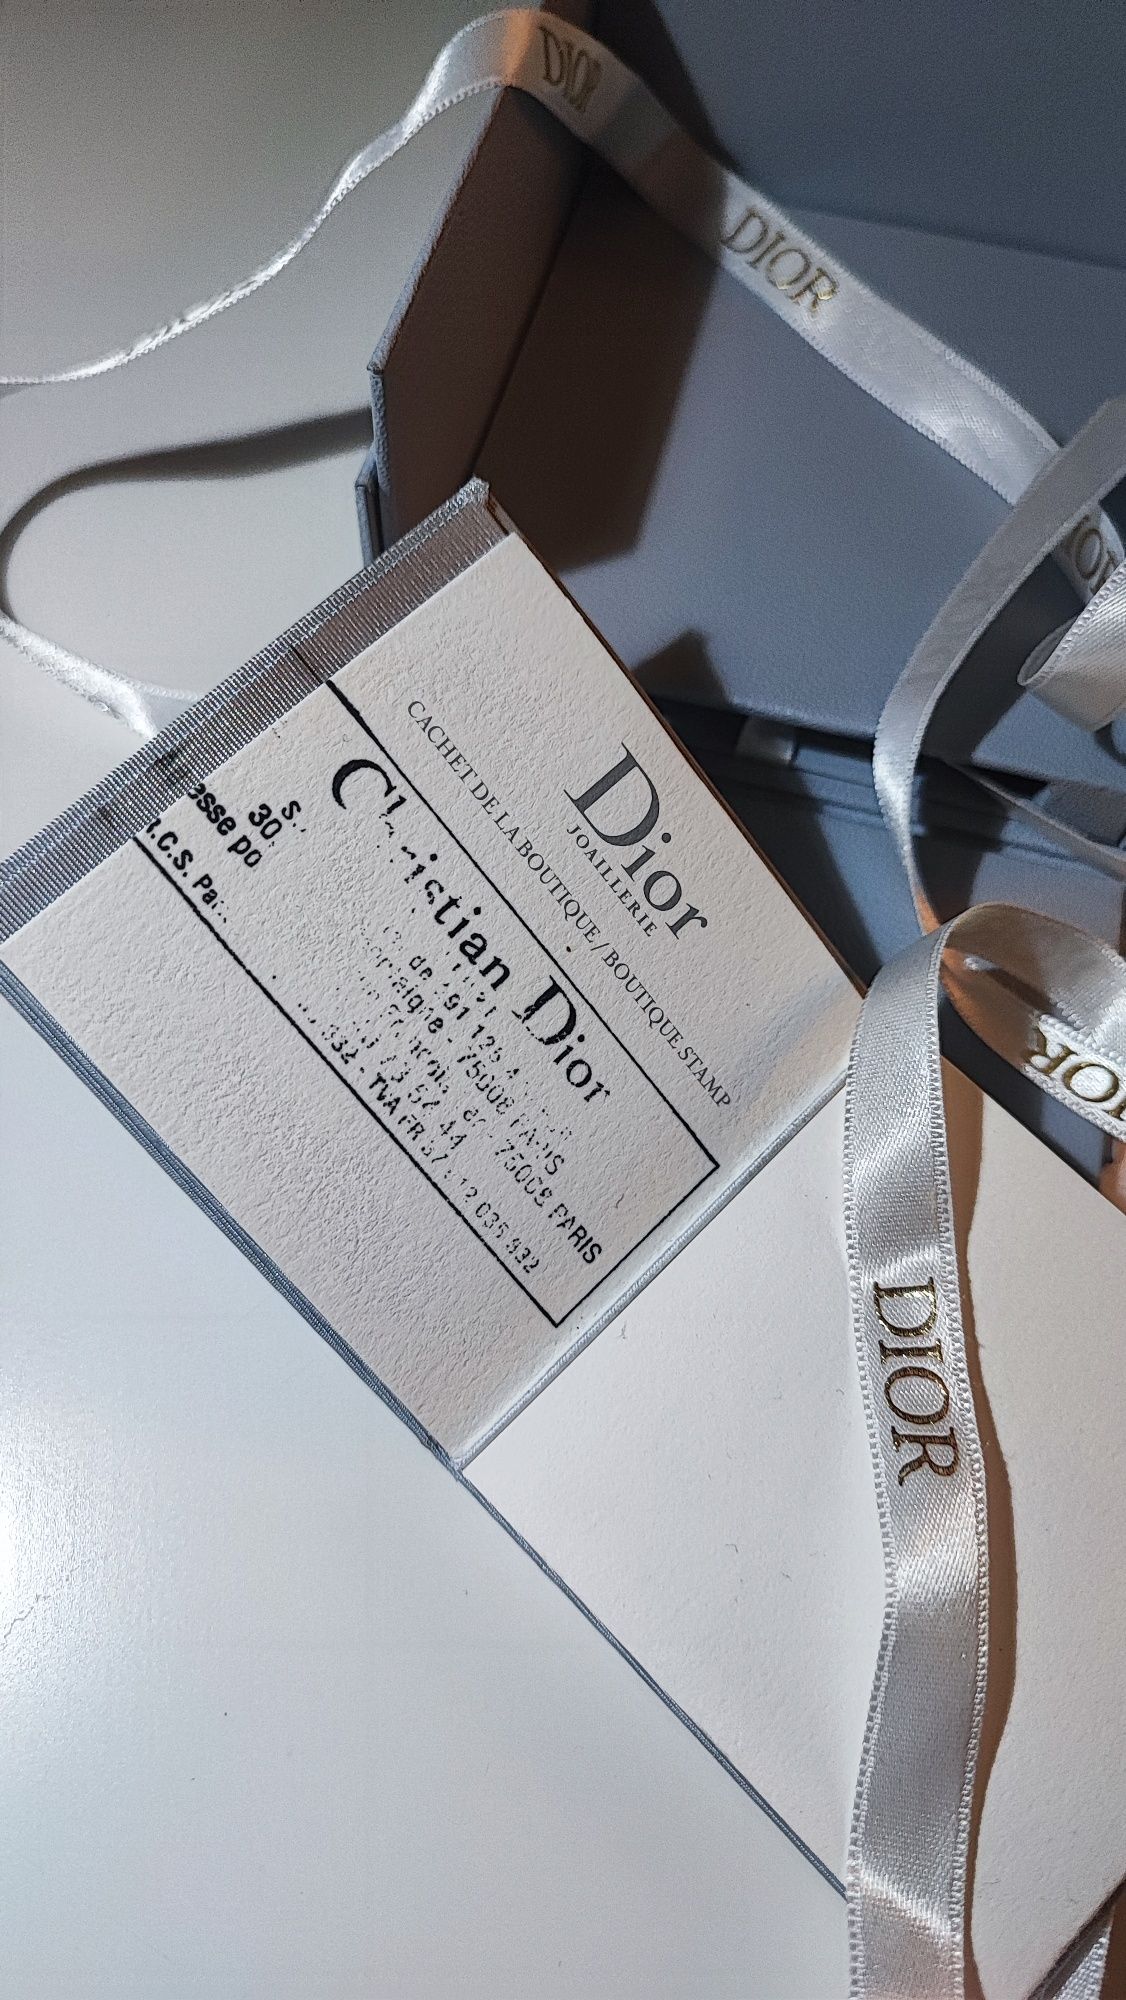 Pudełko karton Dior z ksiażeczką na rachunek